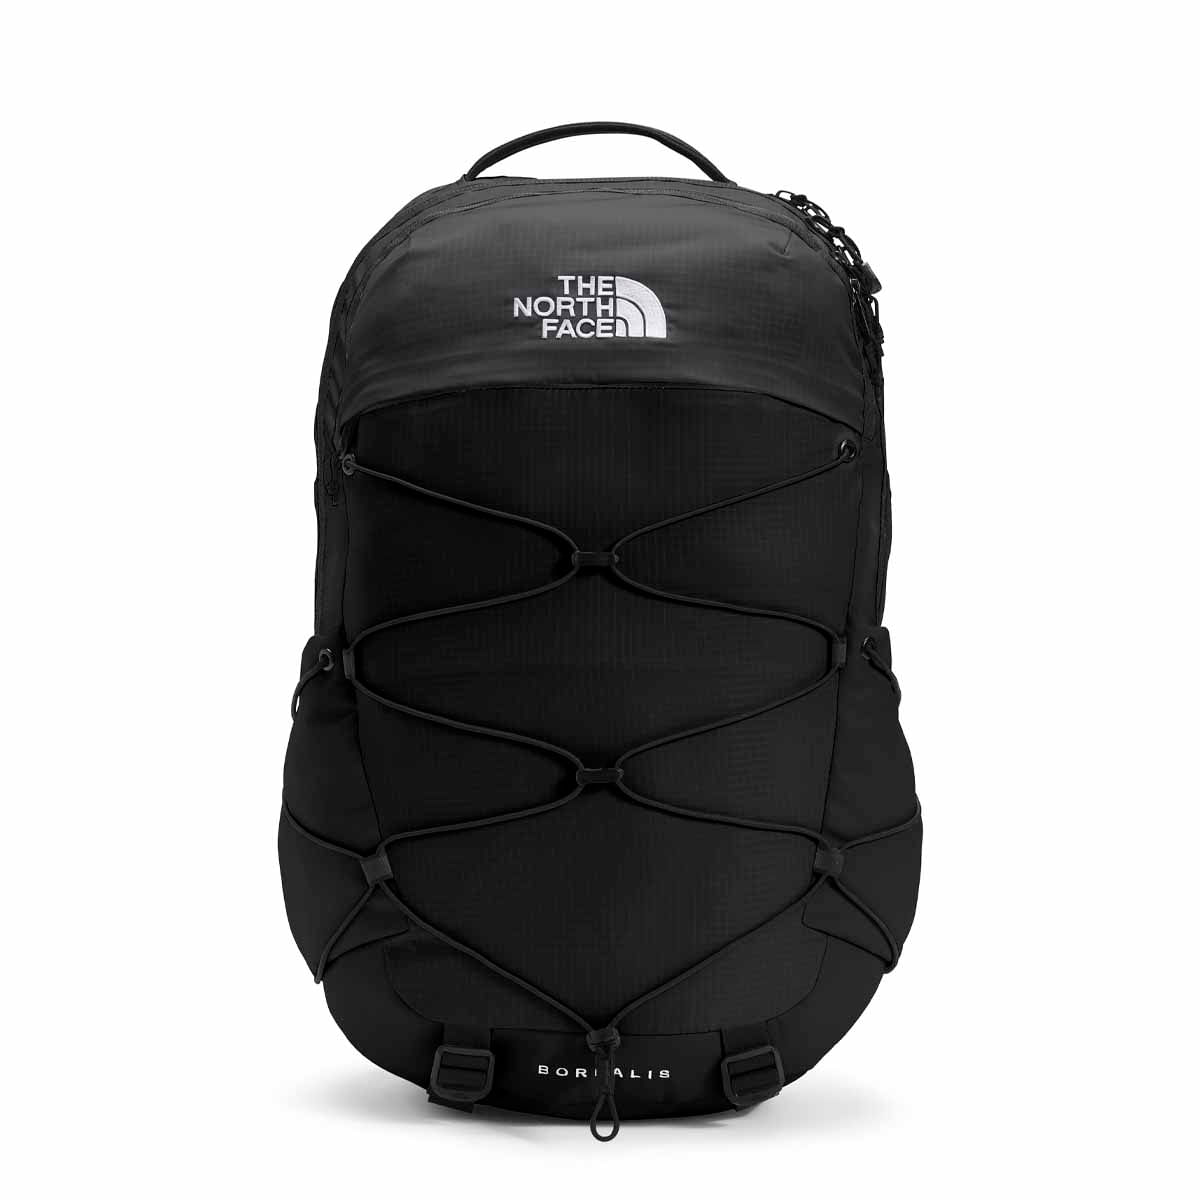 Um mochila Mini North Face Borealis Black NWT Angola